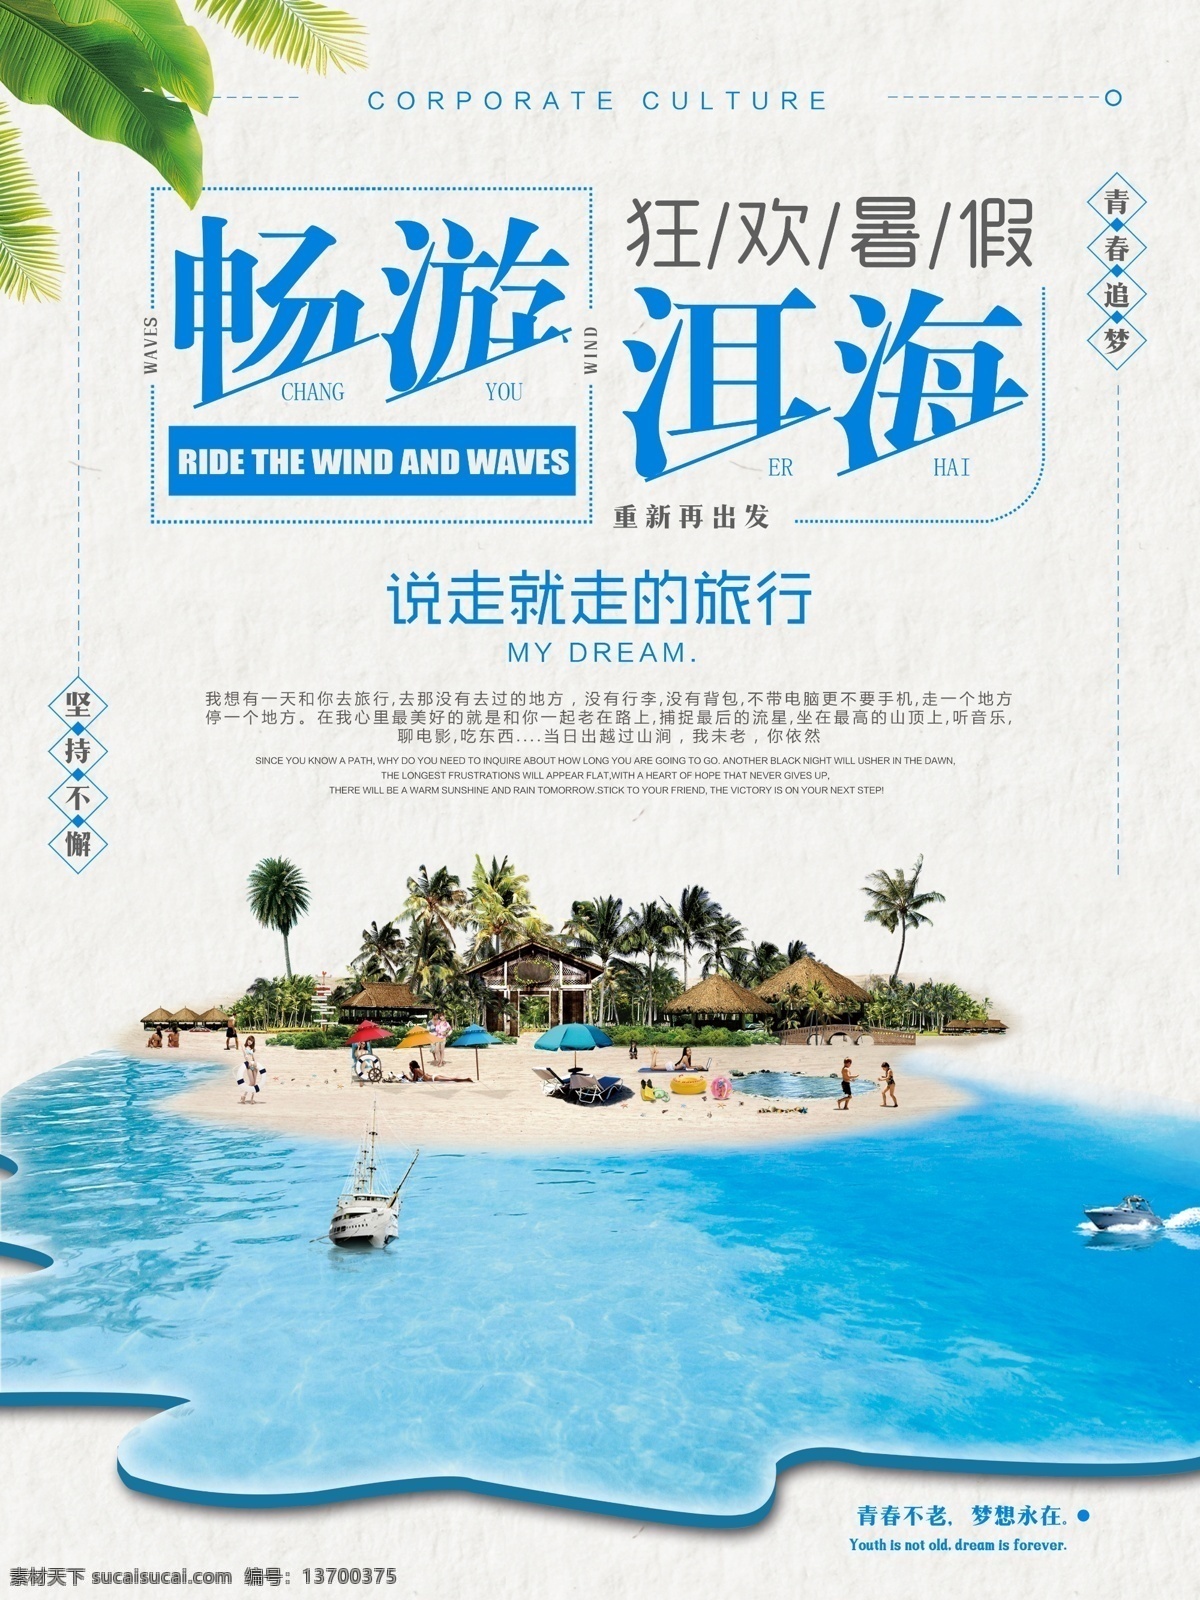 蓝色 简约 清新 畅游 洱海 旅行社 促销 海报 旅游 海滩 宣传 国内游 暑假游 旅行